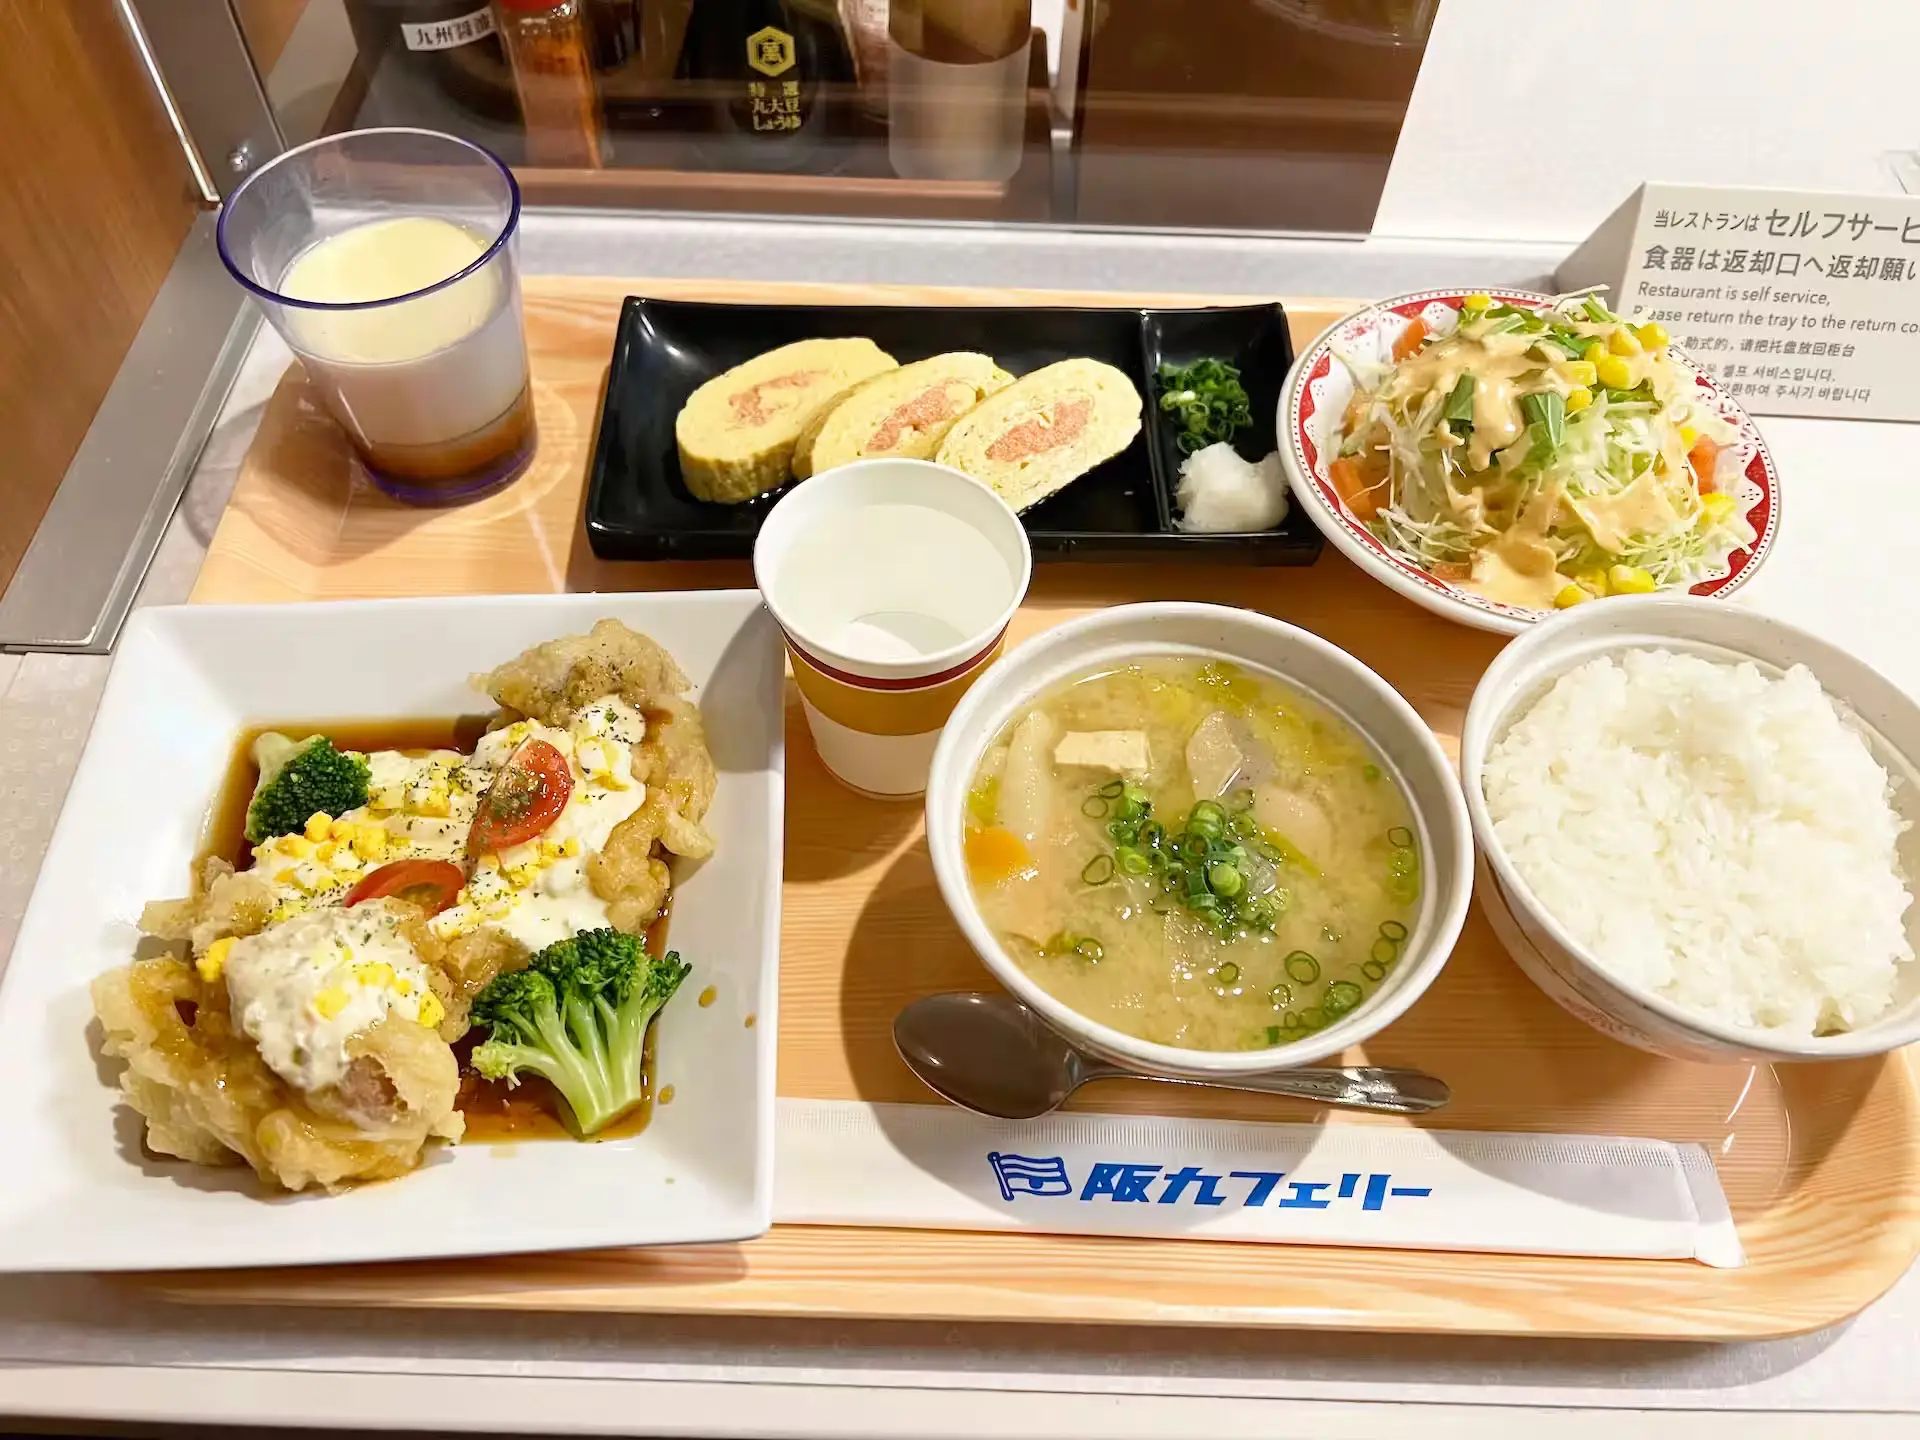 阪九フェリーやまと船内レストランの夕食料理